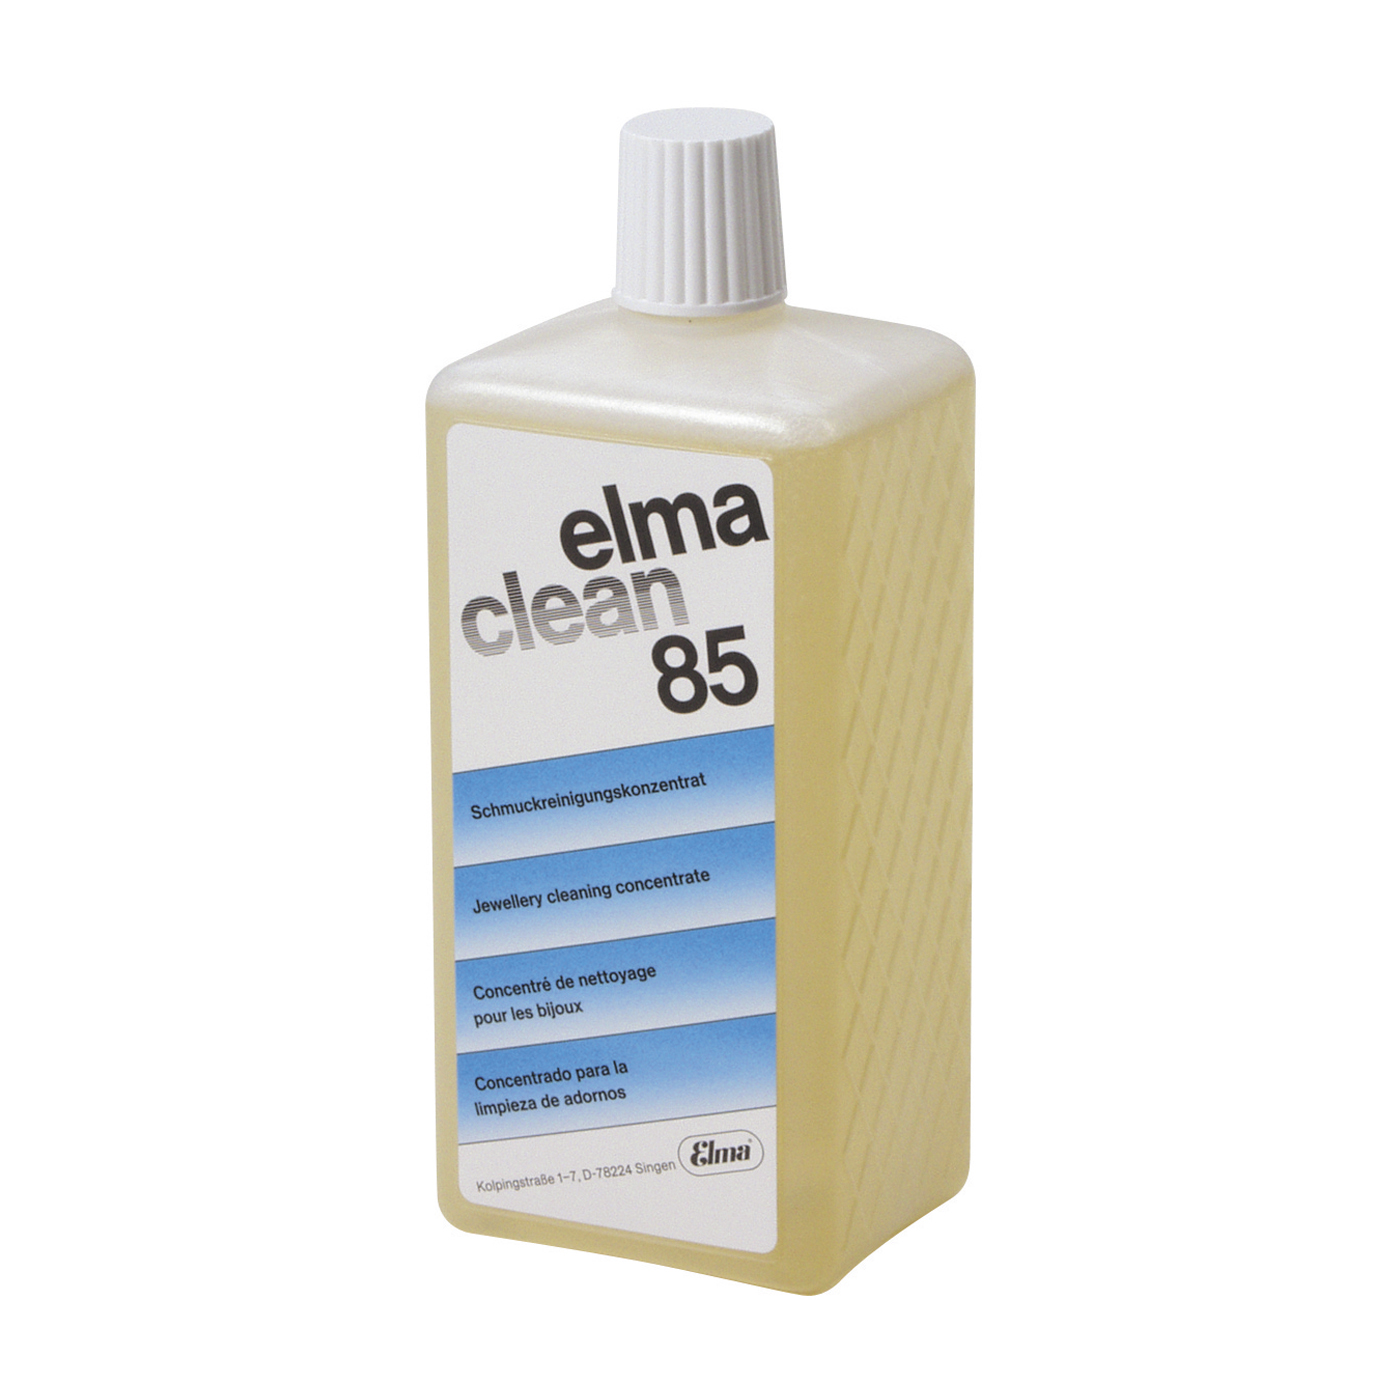 Elma Schmidbauer clean 85 Reinigungslösung, 1000 ml - 1000 ml